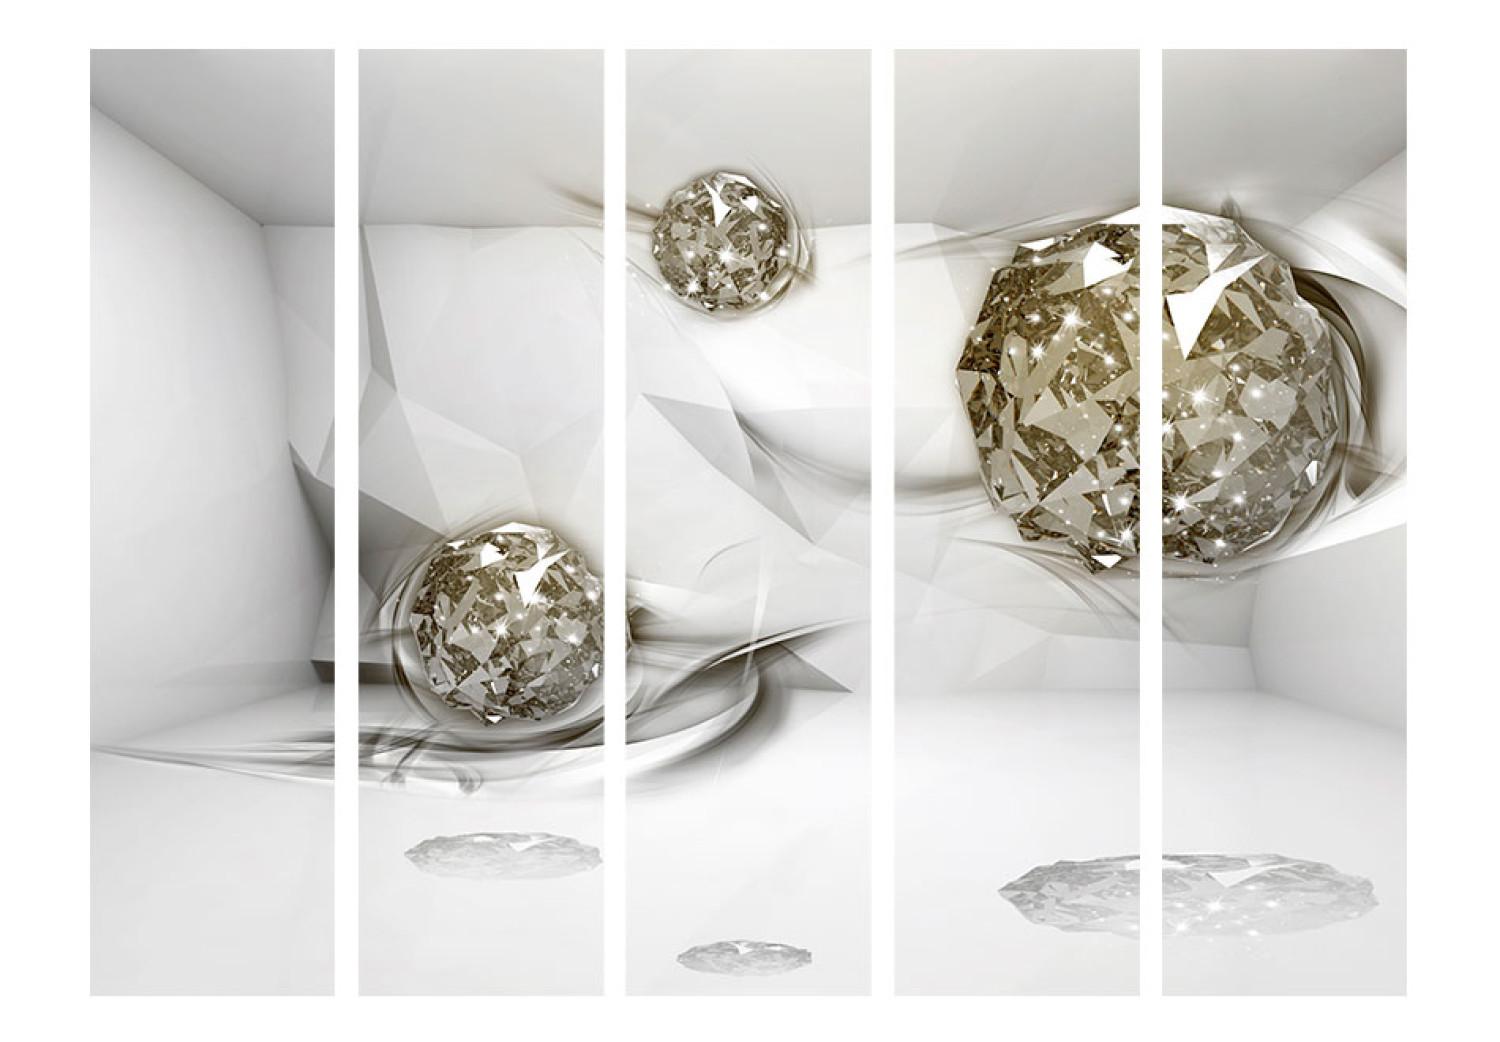 Biombo decorativo Diamantes abstractos II - figuras geométricas en resplandor de cristal